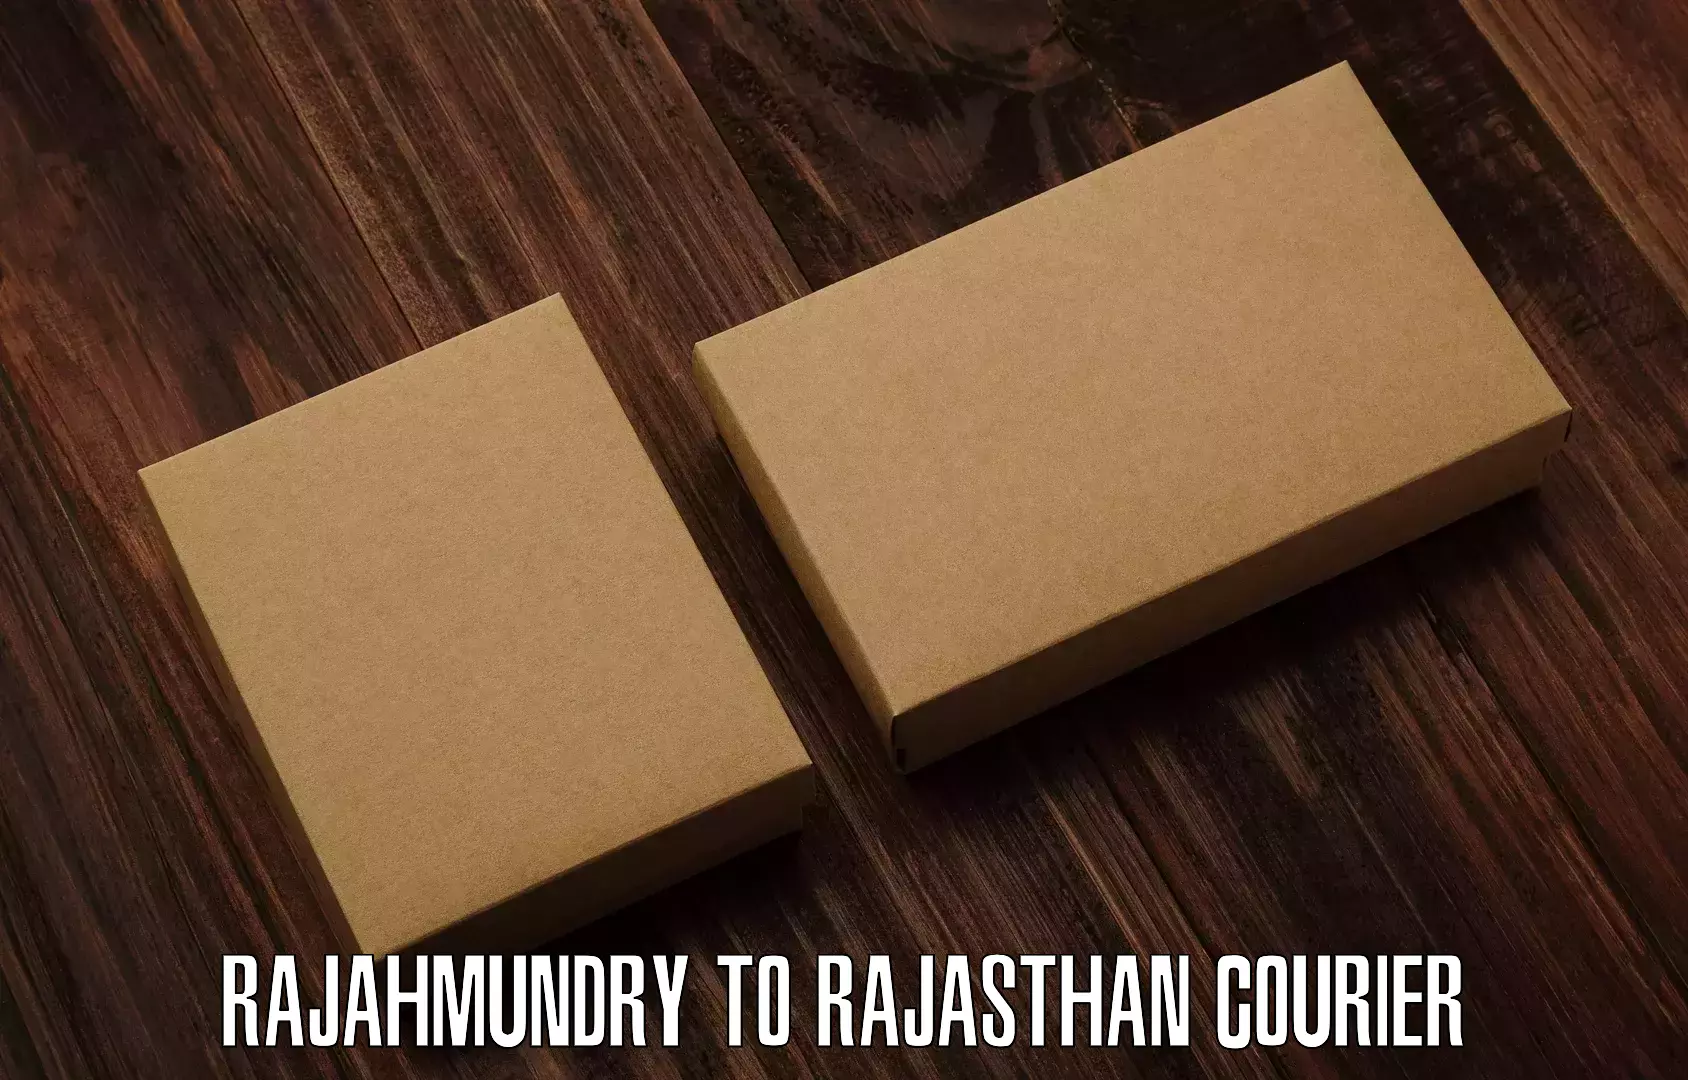 Comprehensive delivery network Rajahmundry to Gotan